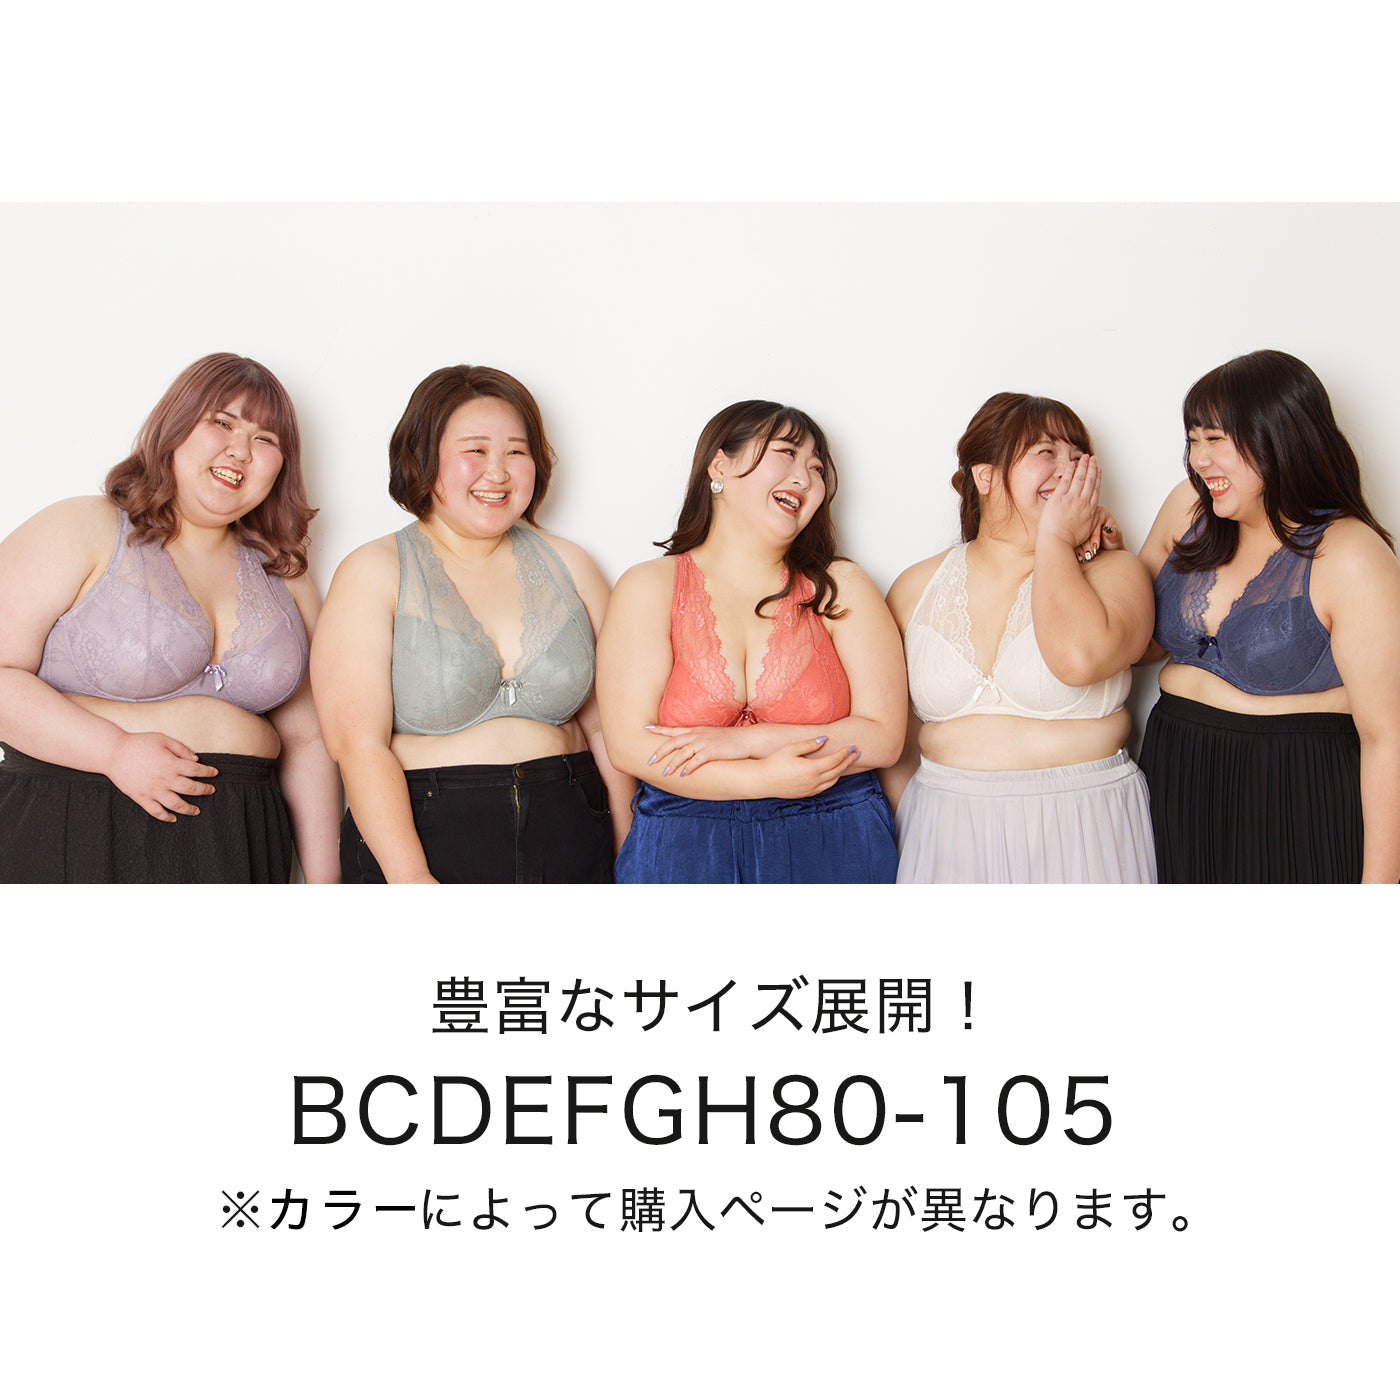 【B80〜H105】しっかりホールド・美胸キーパーフルカップブラ(モカ)_90117-58